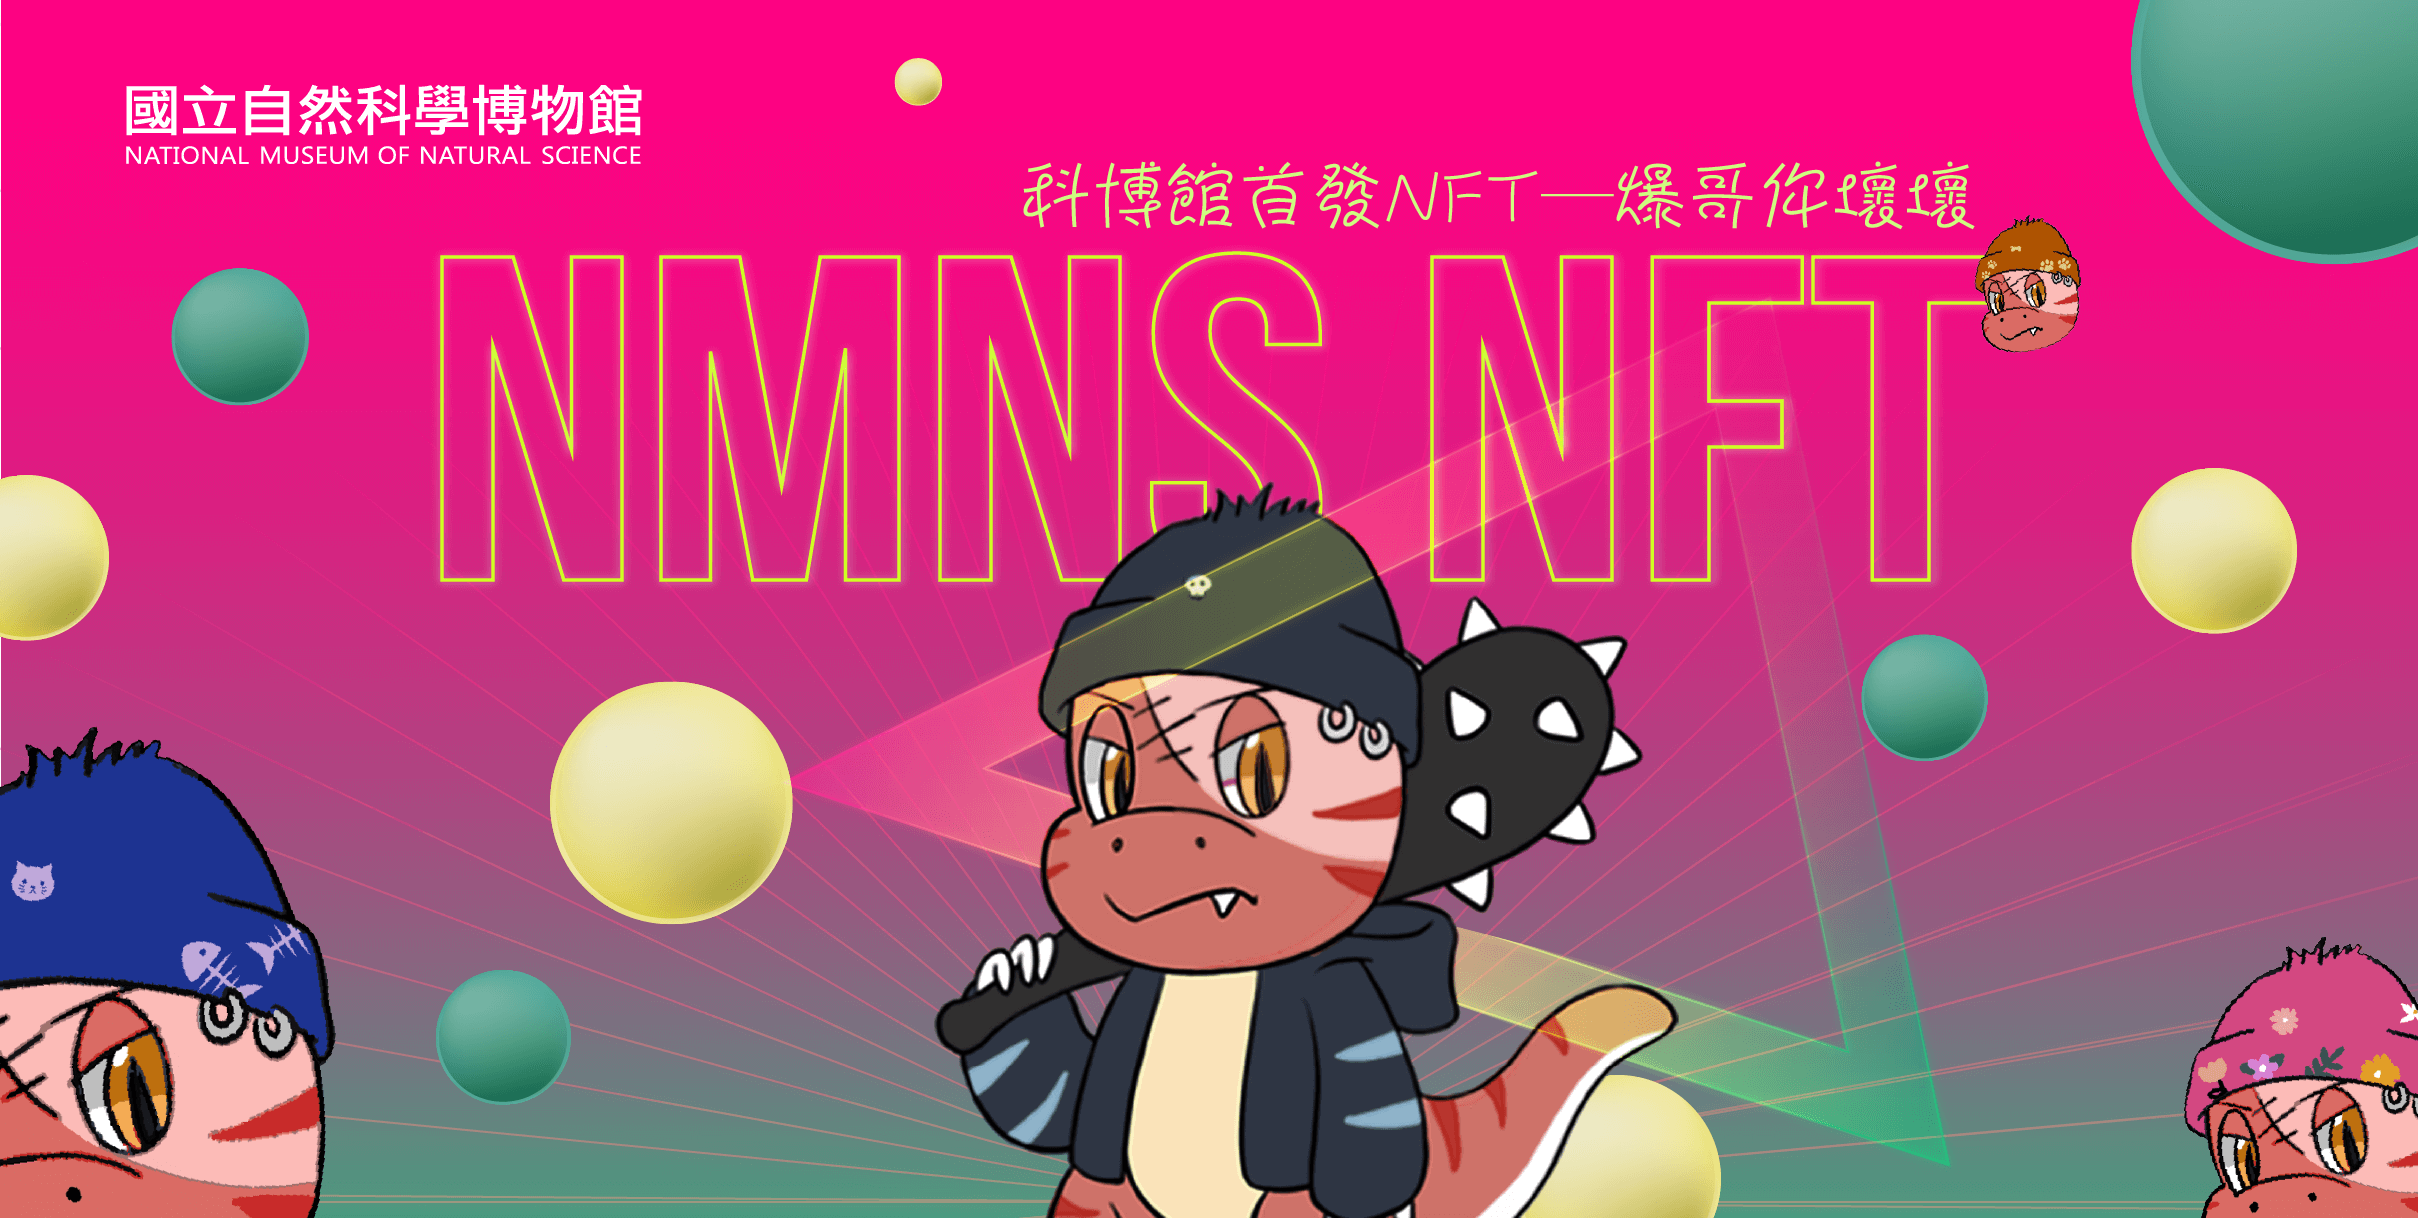 科博館與臺灣知名NFT平台「Jcard 這咖」跨界合作，以吉祥物恐龍家族反派角色「爆哥」為主角推出NFT。